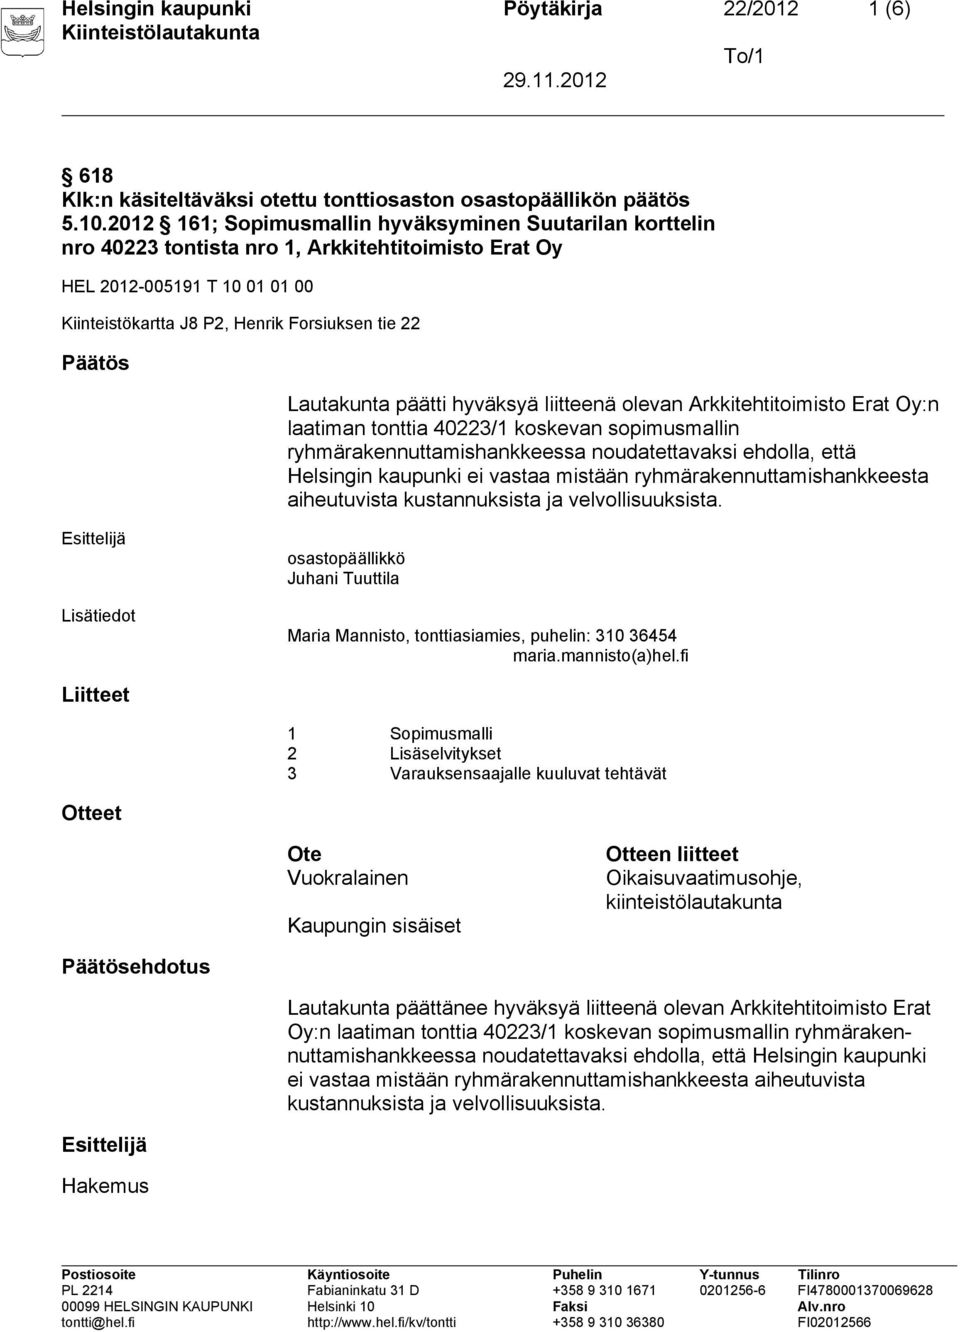 Lautakunta päätti hyväksyä liitteenä olevan Arkkitehtitoimisto Erat Oy:n laatiman tonttia 40223/1 koskevan sopimusmallin ryhmärakennuttamishankkeessa noudatettavaksi ehdolla, että Helsingin kaupunki